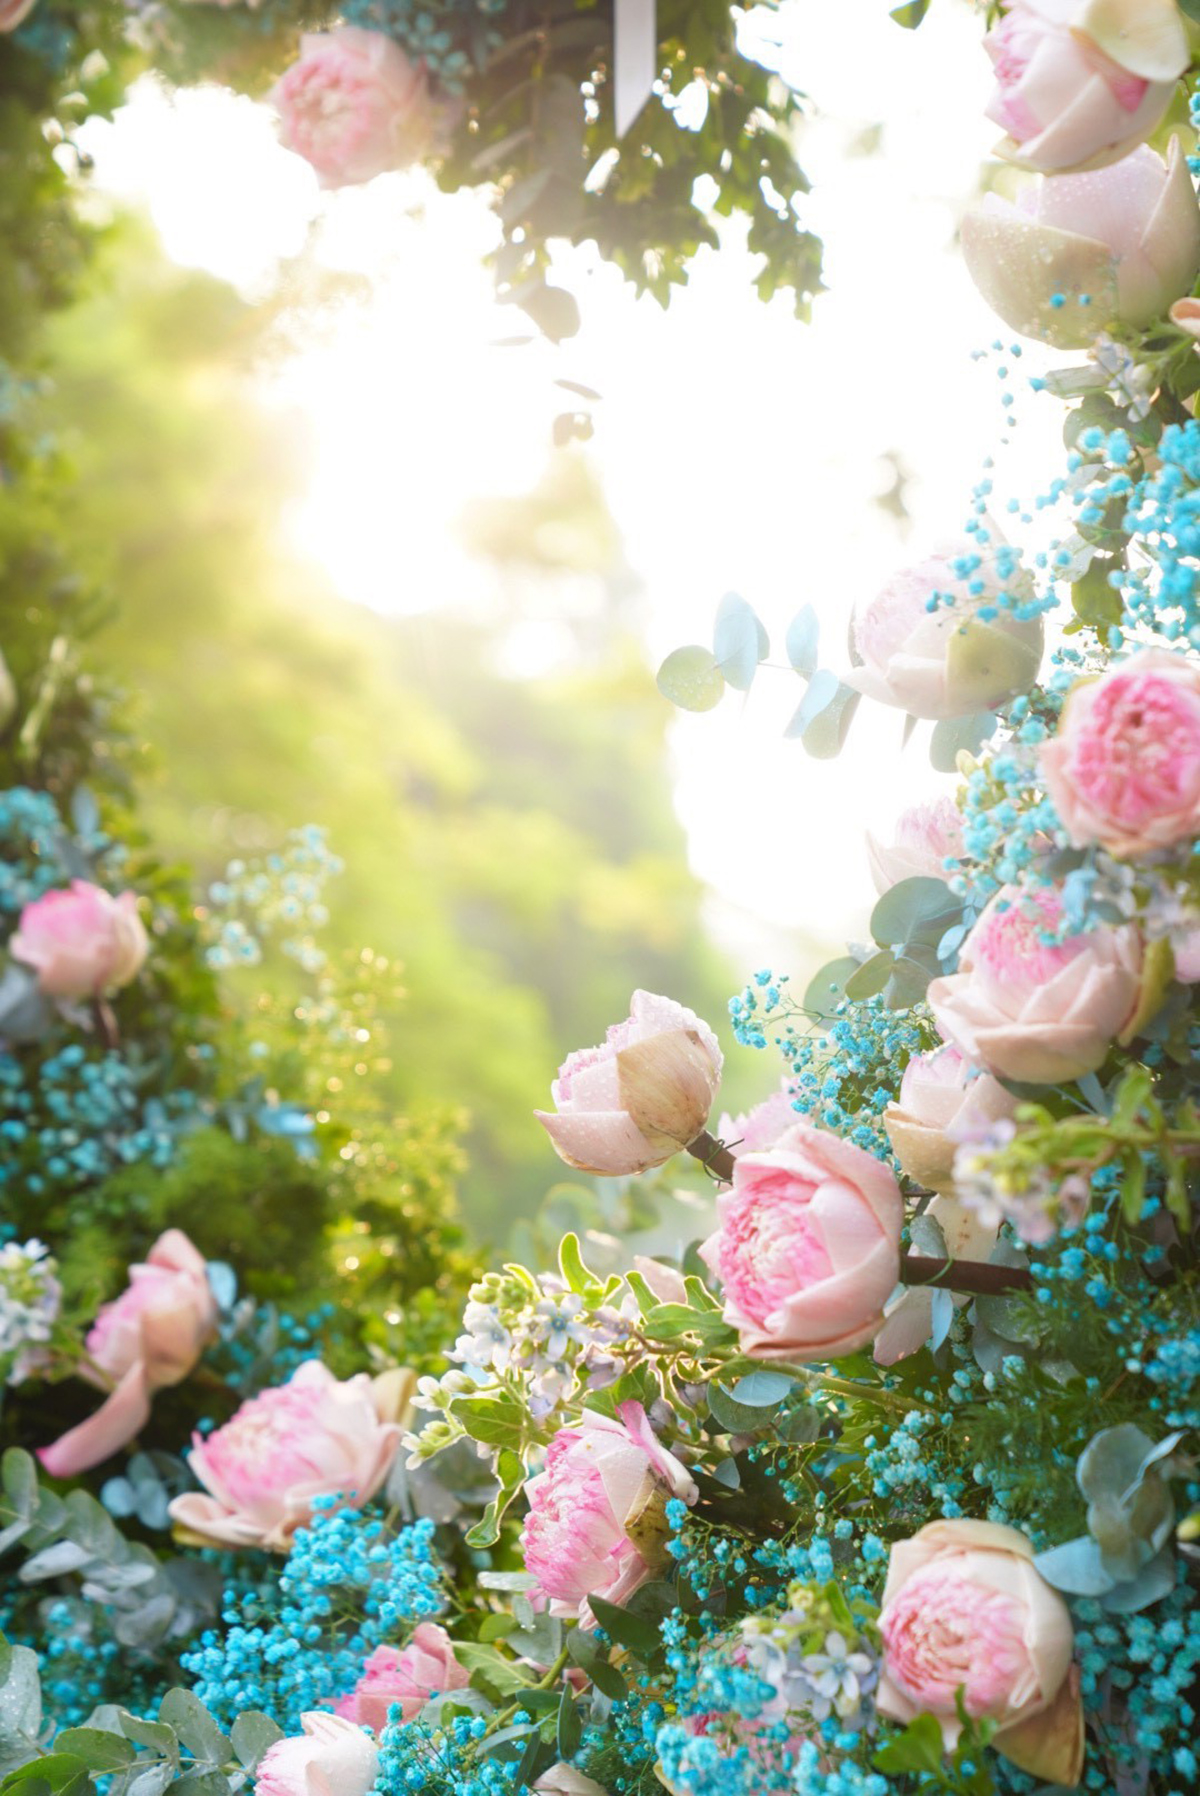 Hoa sen Hà Nội mùa Vu Lan với những cánh hoa trắng tinh khôi mang đến cho người xem cảm giác thanh tịnh và thăng hoa tâm spirit. Cùng xem bức ảnh hoa sen Hà Nội để trải nghiệm không khí Vu Lan trang nghiêm và thiêng liêng.